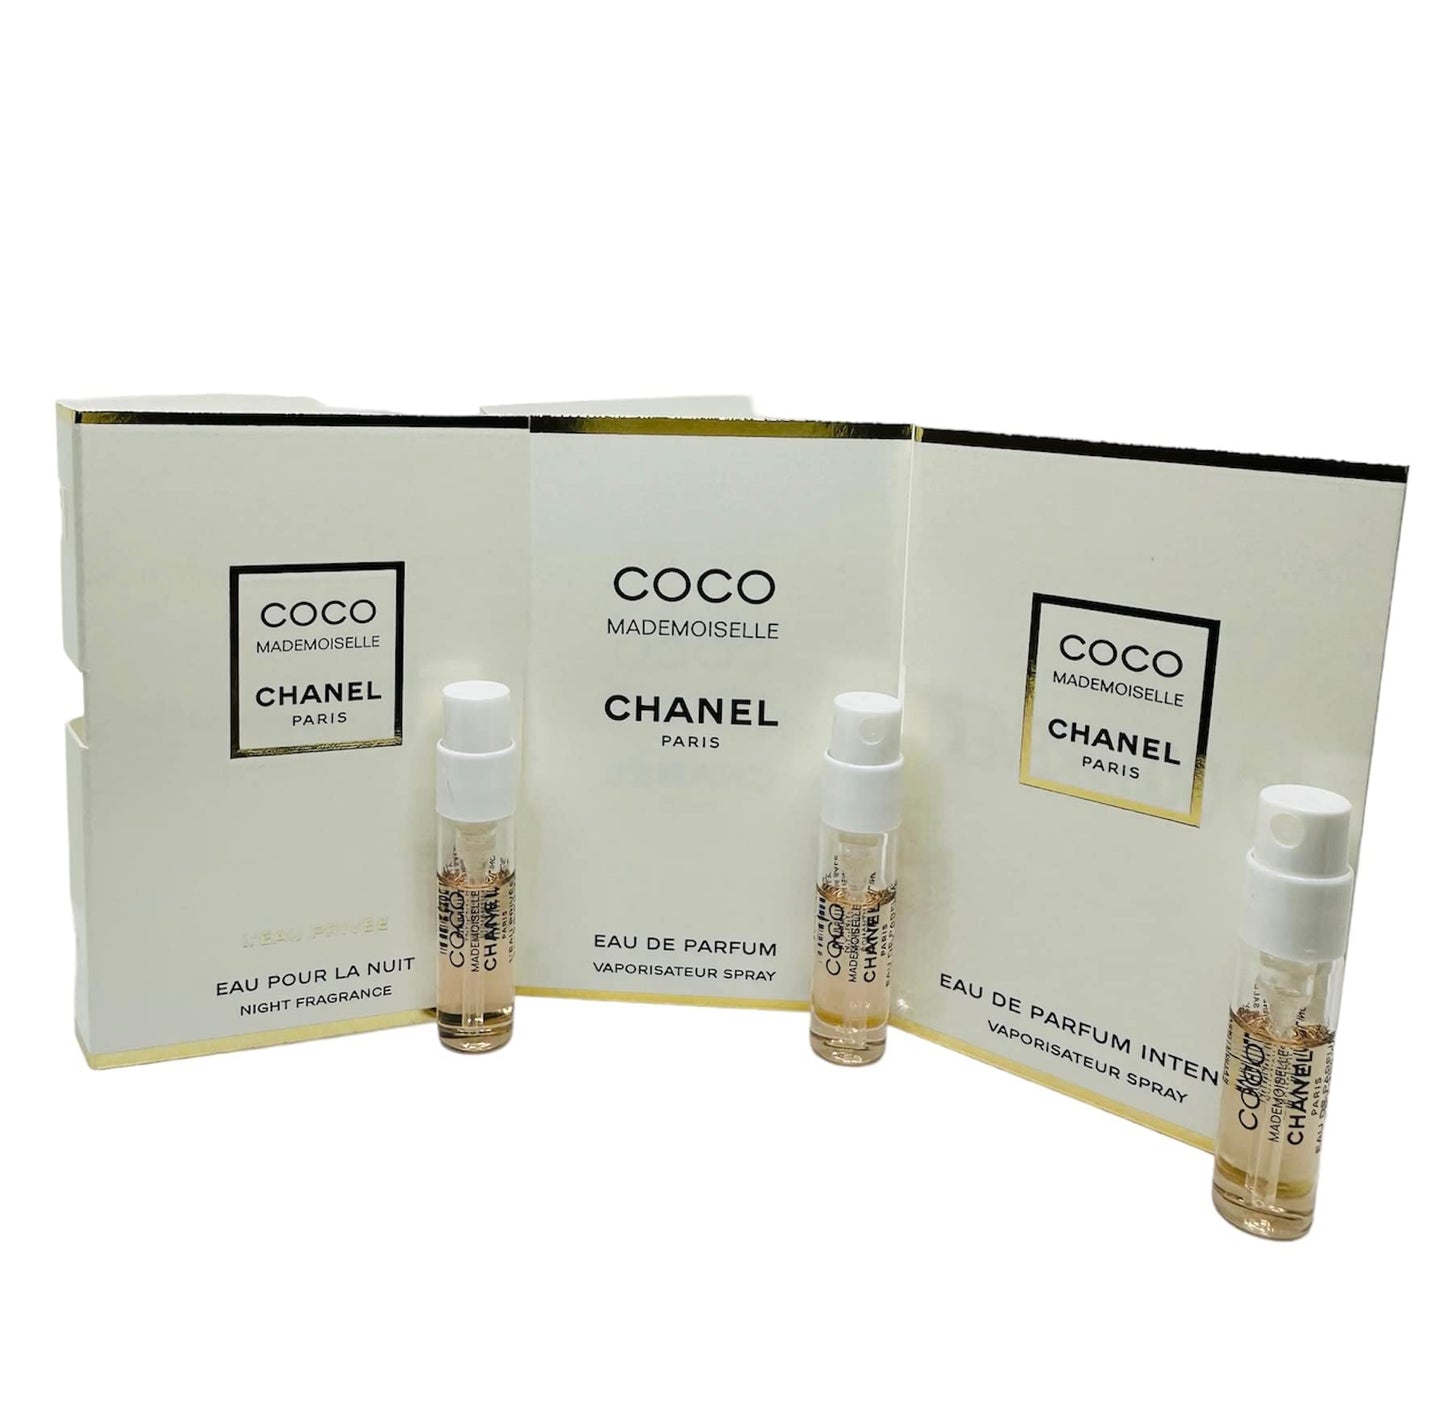 Chanel Coco Mademoiselle Eau de Parfum Spray for Women, 3.4 Fluid Ounce